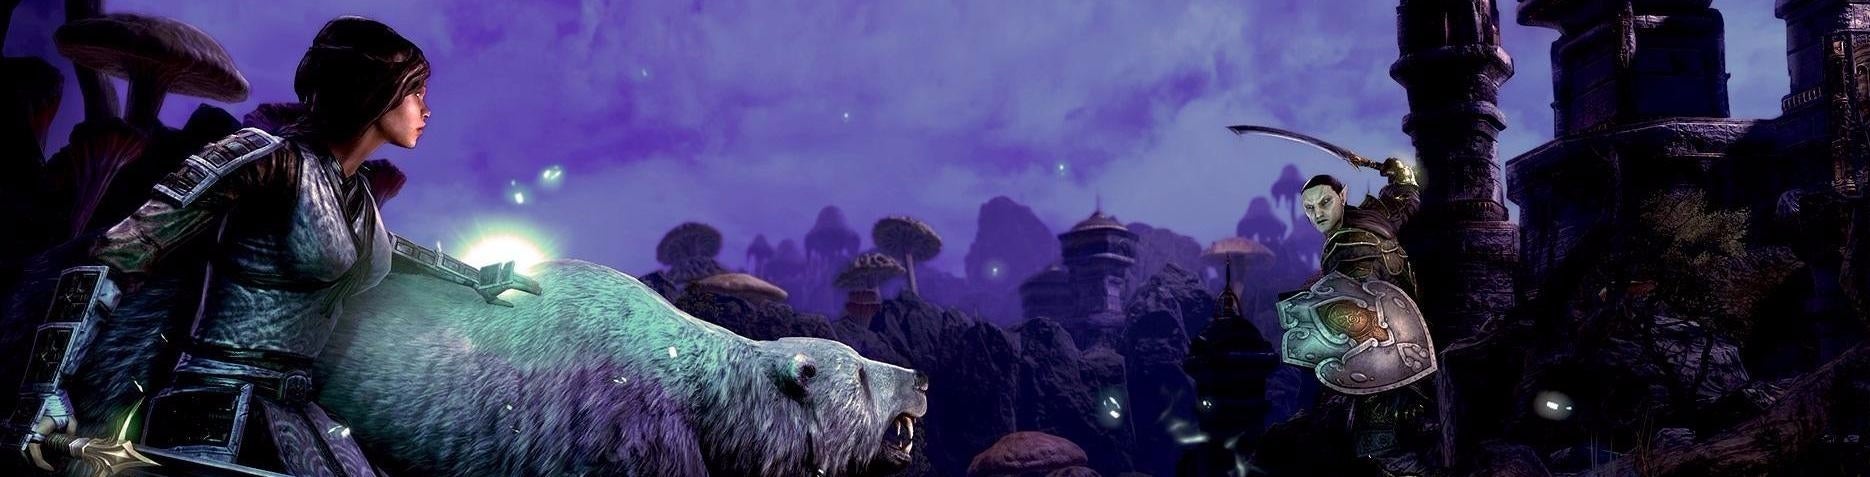 Imagem para Elder Scrolls Online prepara o futuro com Morrowind